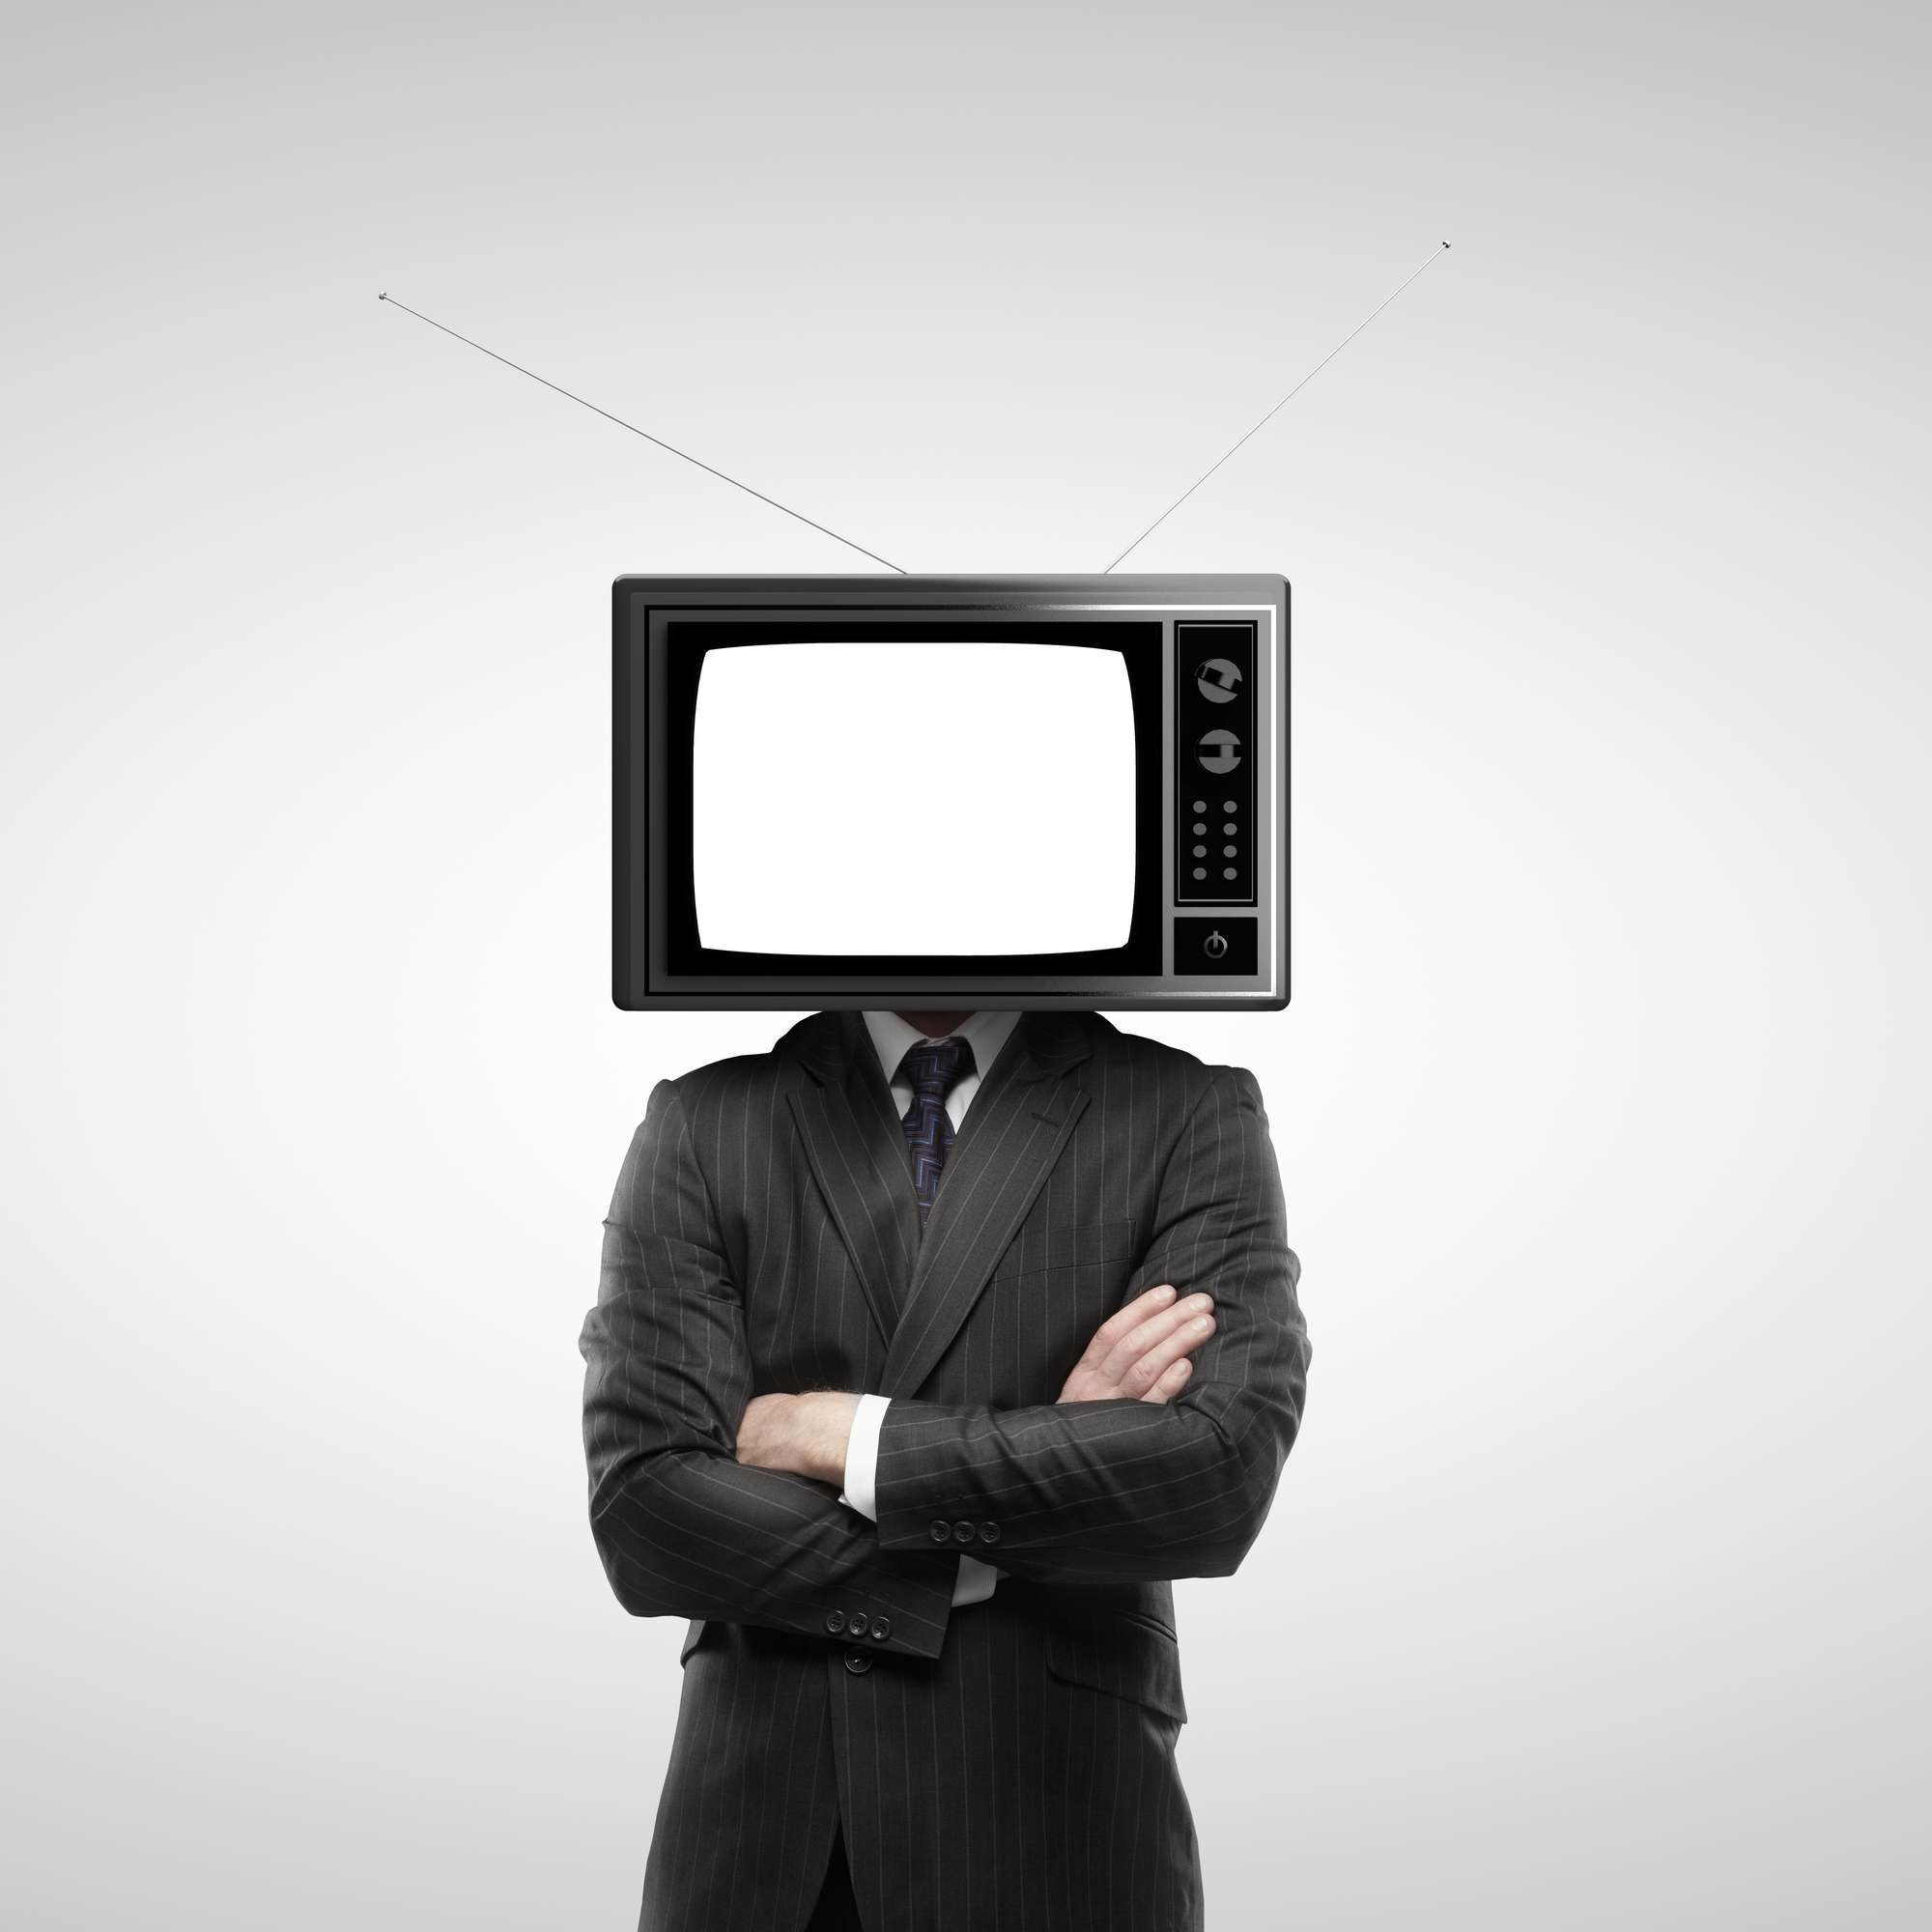 Картинка tv man. Телевизор вместо головы. Голова телевизор. Человек телевизор. Человек с телевизором вместо головы.